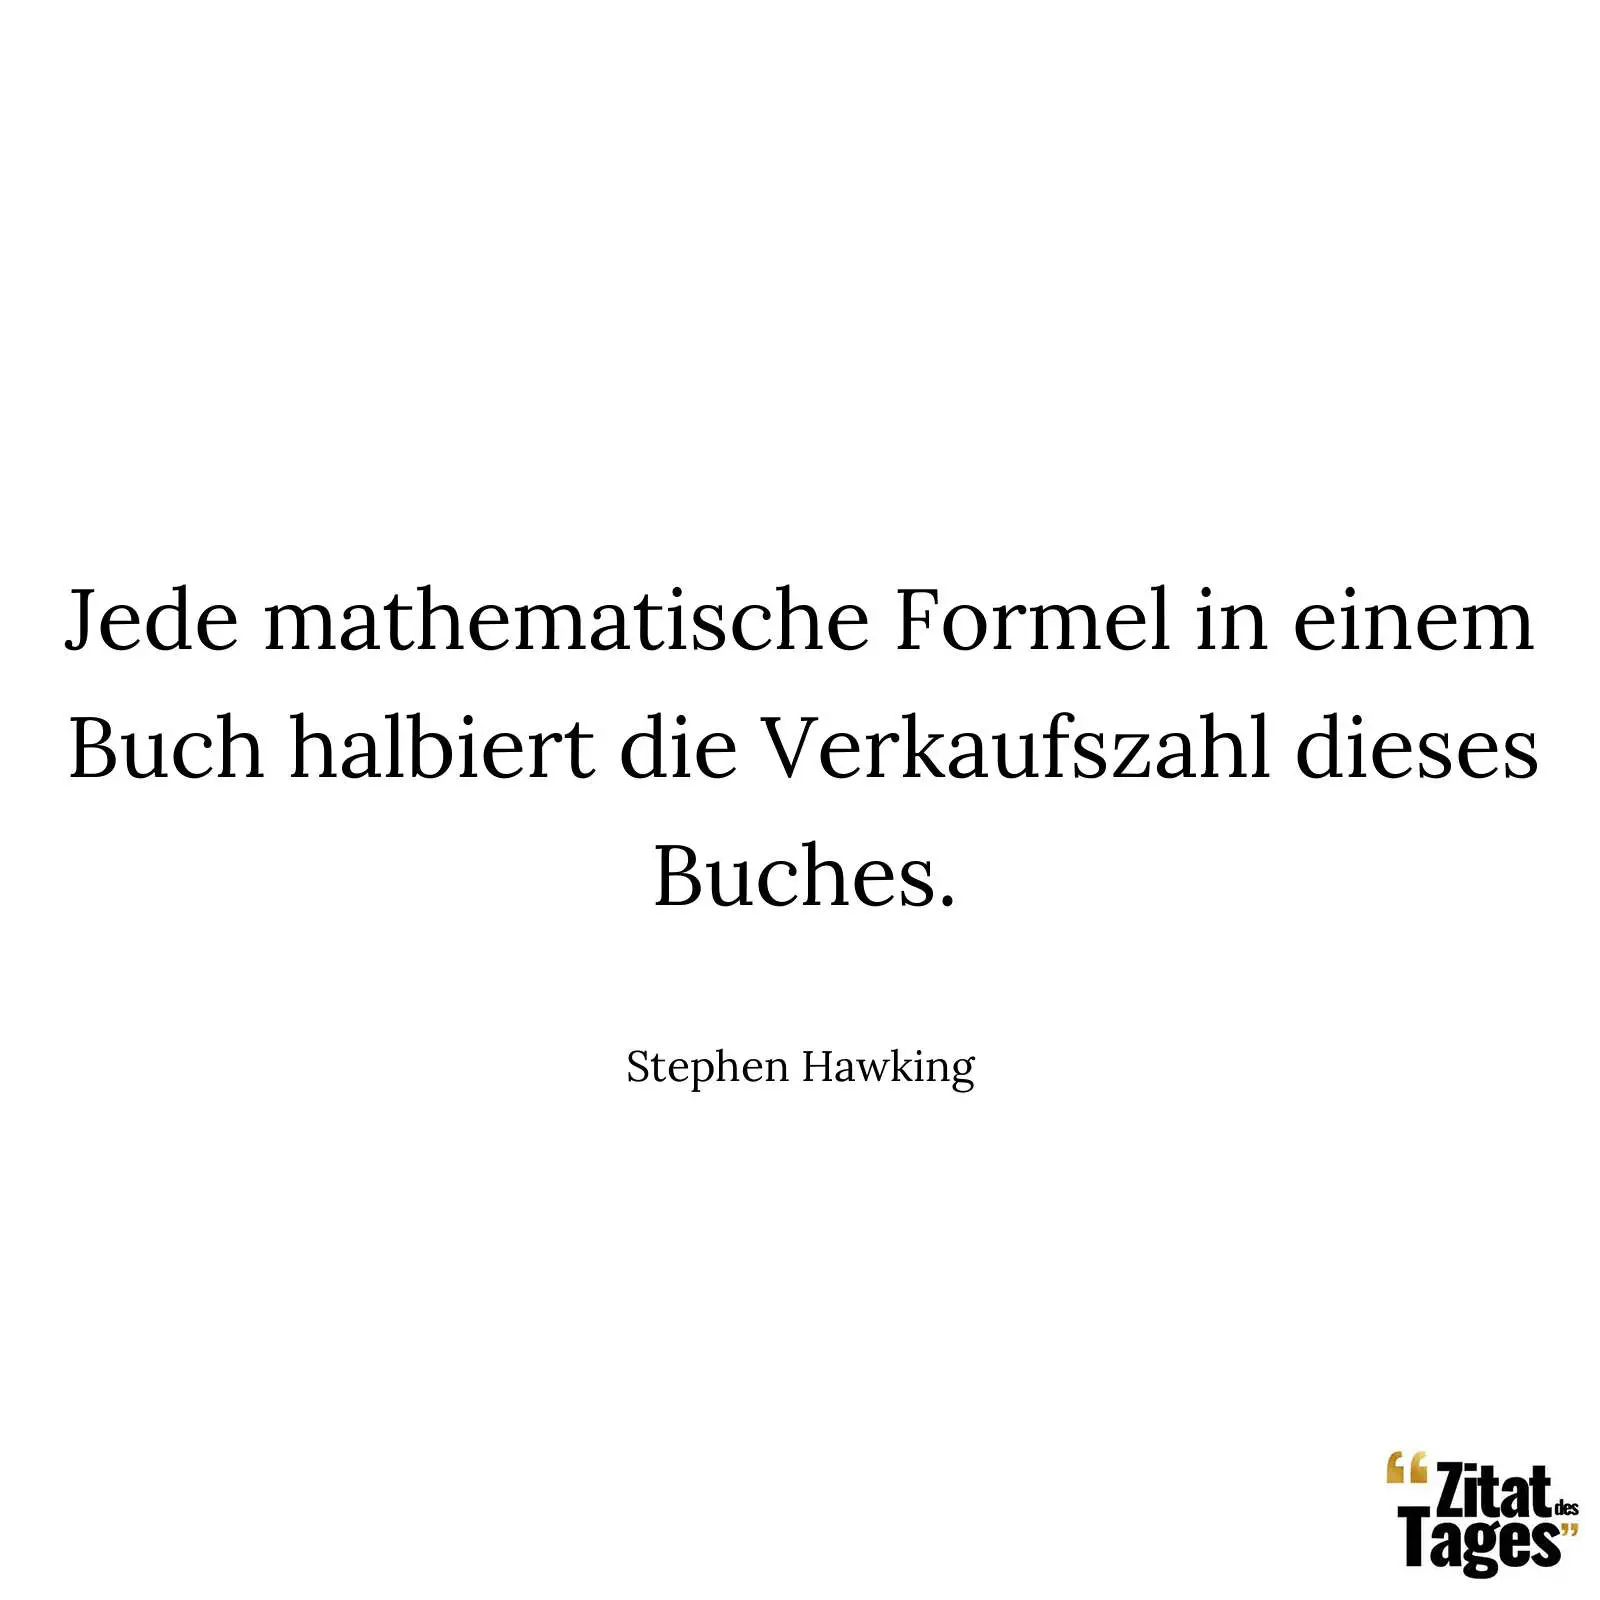 Jede mathematische Formel in einem Buch halbiert die Verkaufszahl dieses Buches. - Stephen Hawking